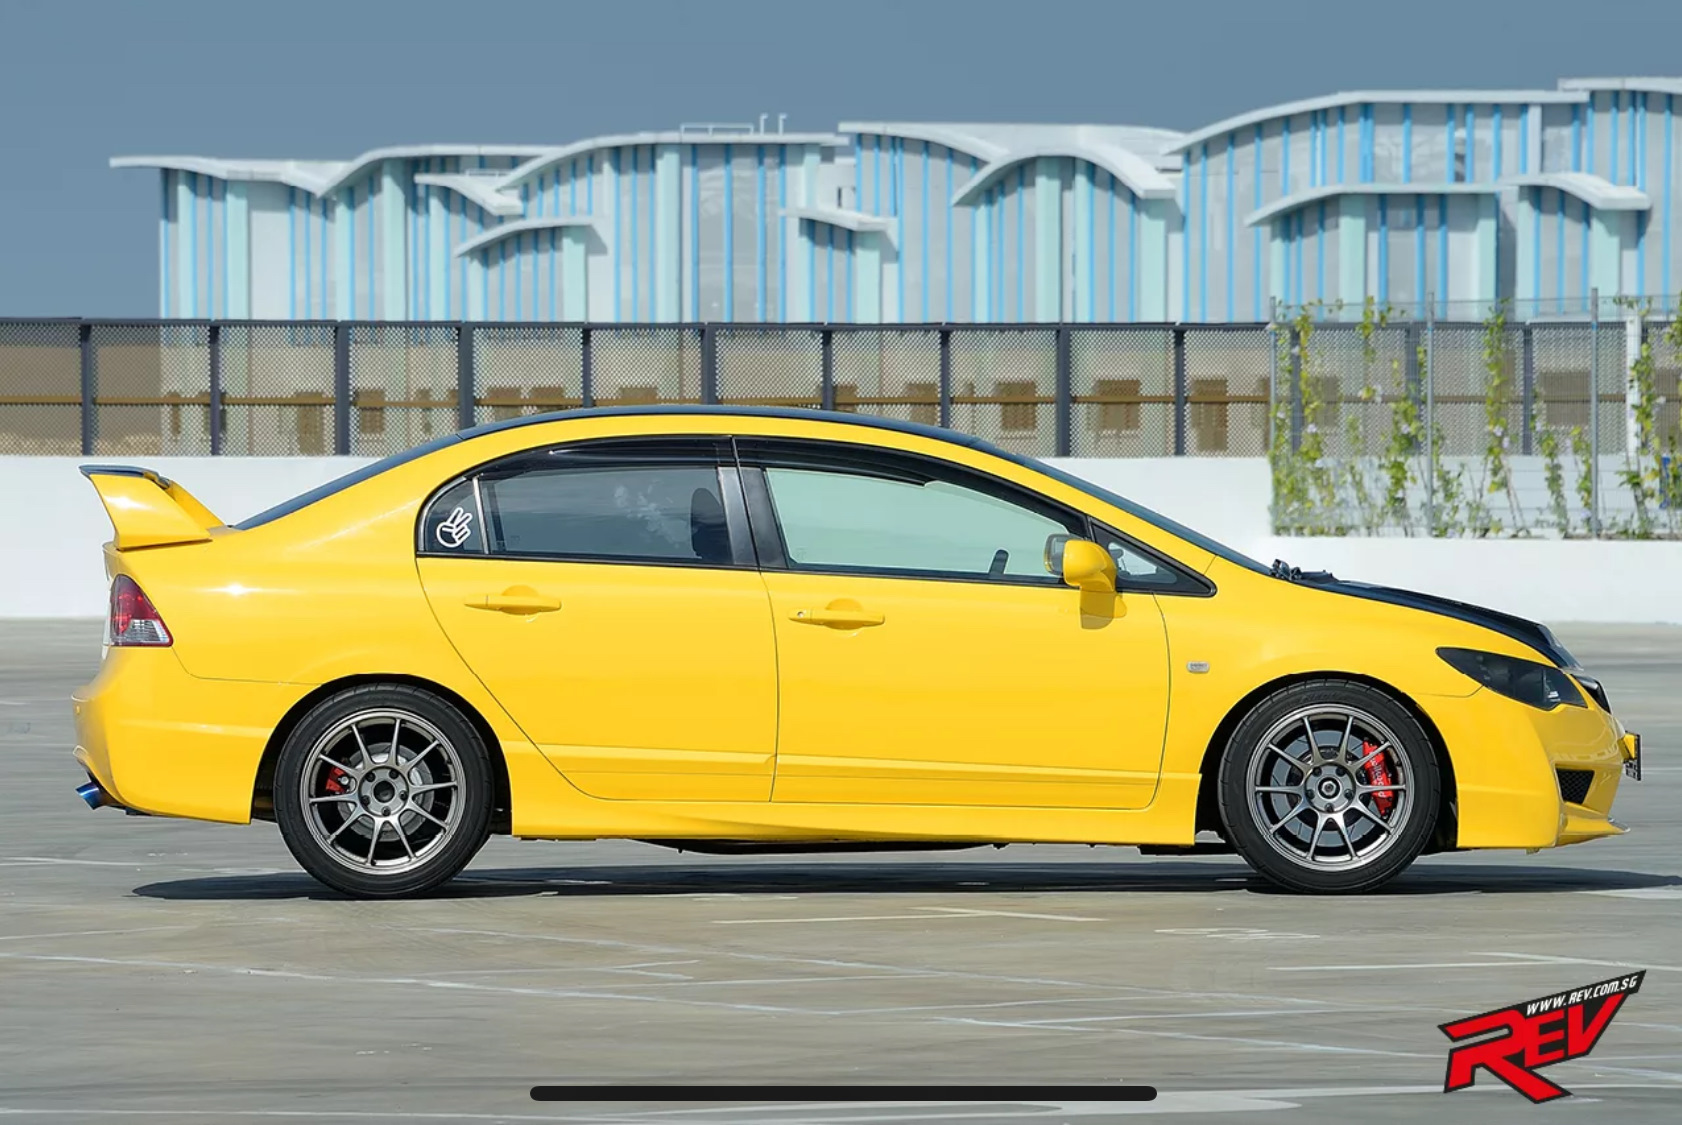 Honda Civic Type r 6 желтый. Желтый Honda Civic 4d. Желтый Цивик 4д. Хонда Цивик желтая. Honda желтая